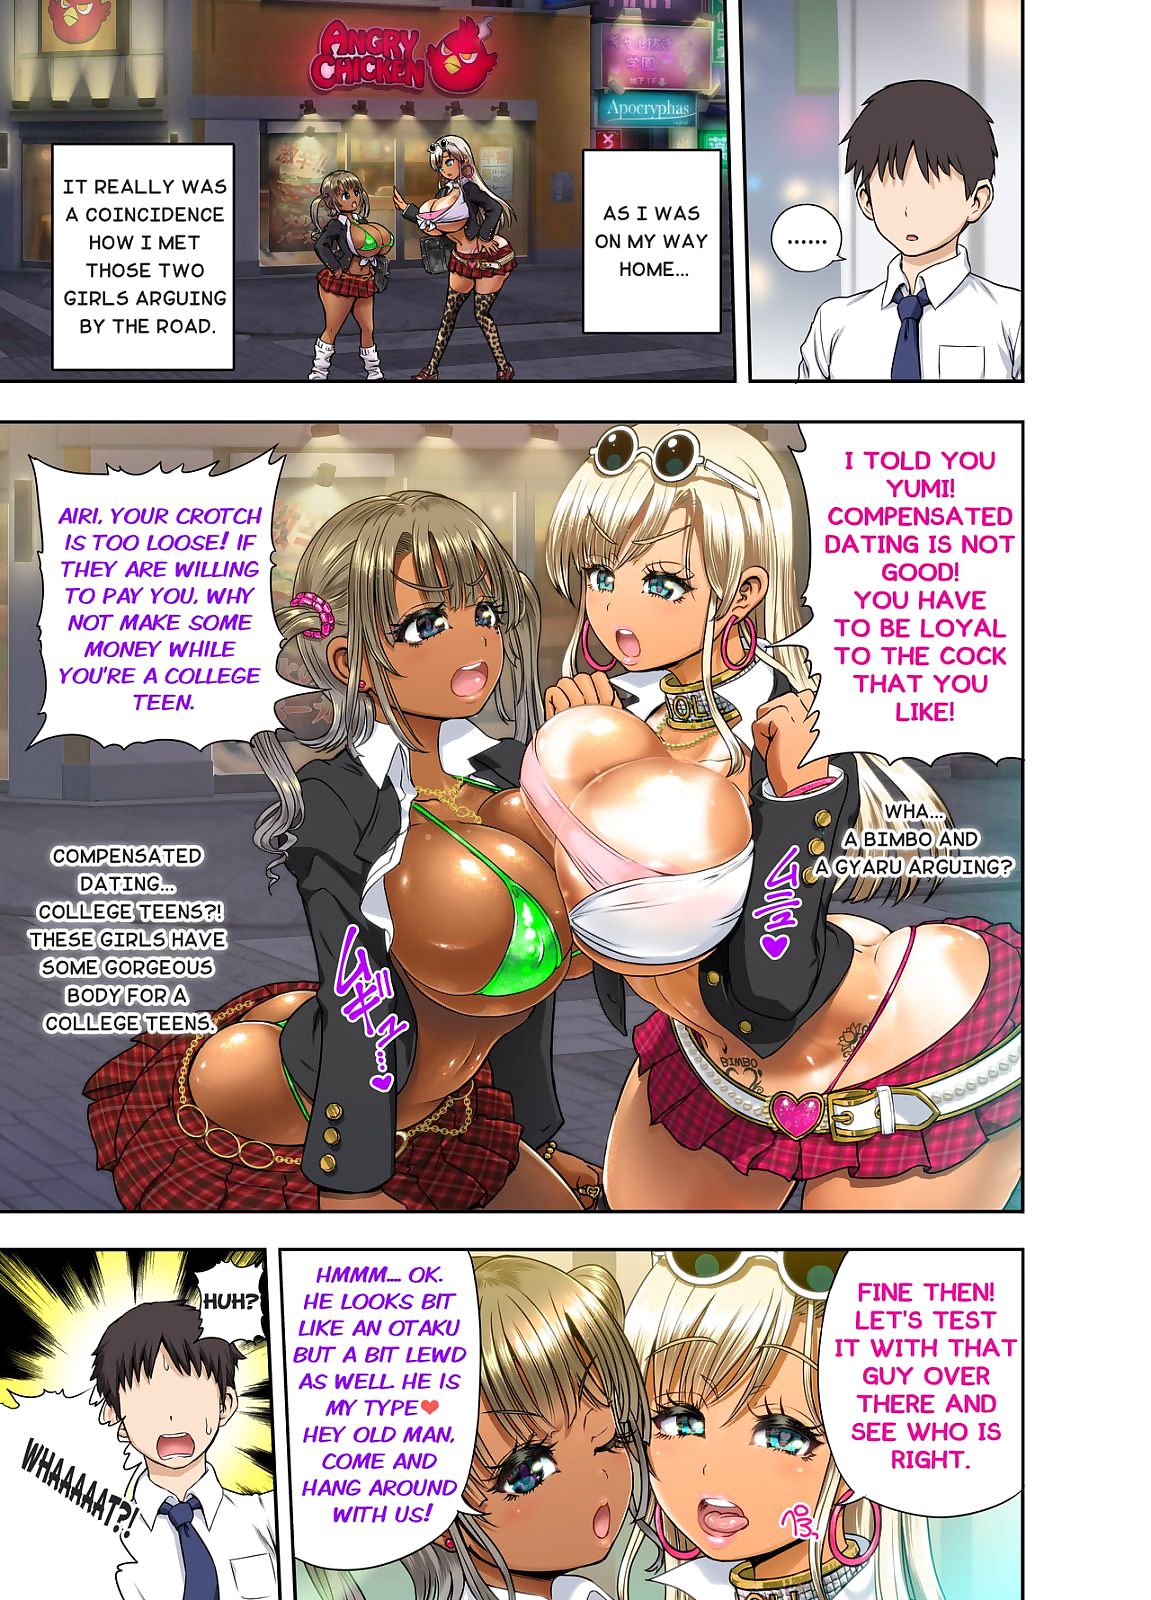 gyaru vs Bimbo Hentai page 1